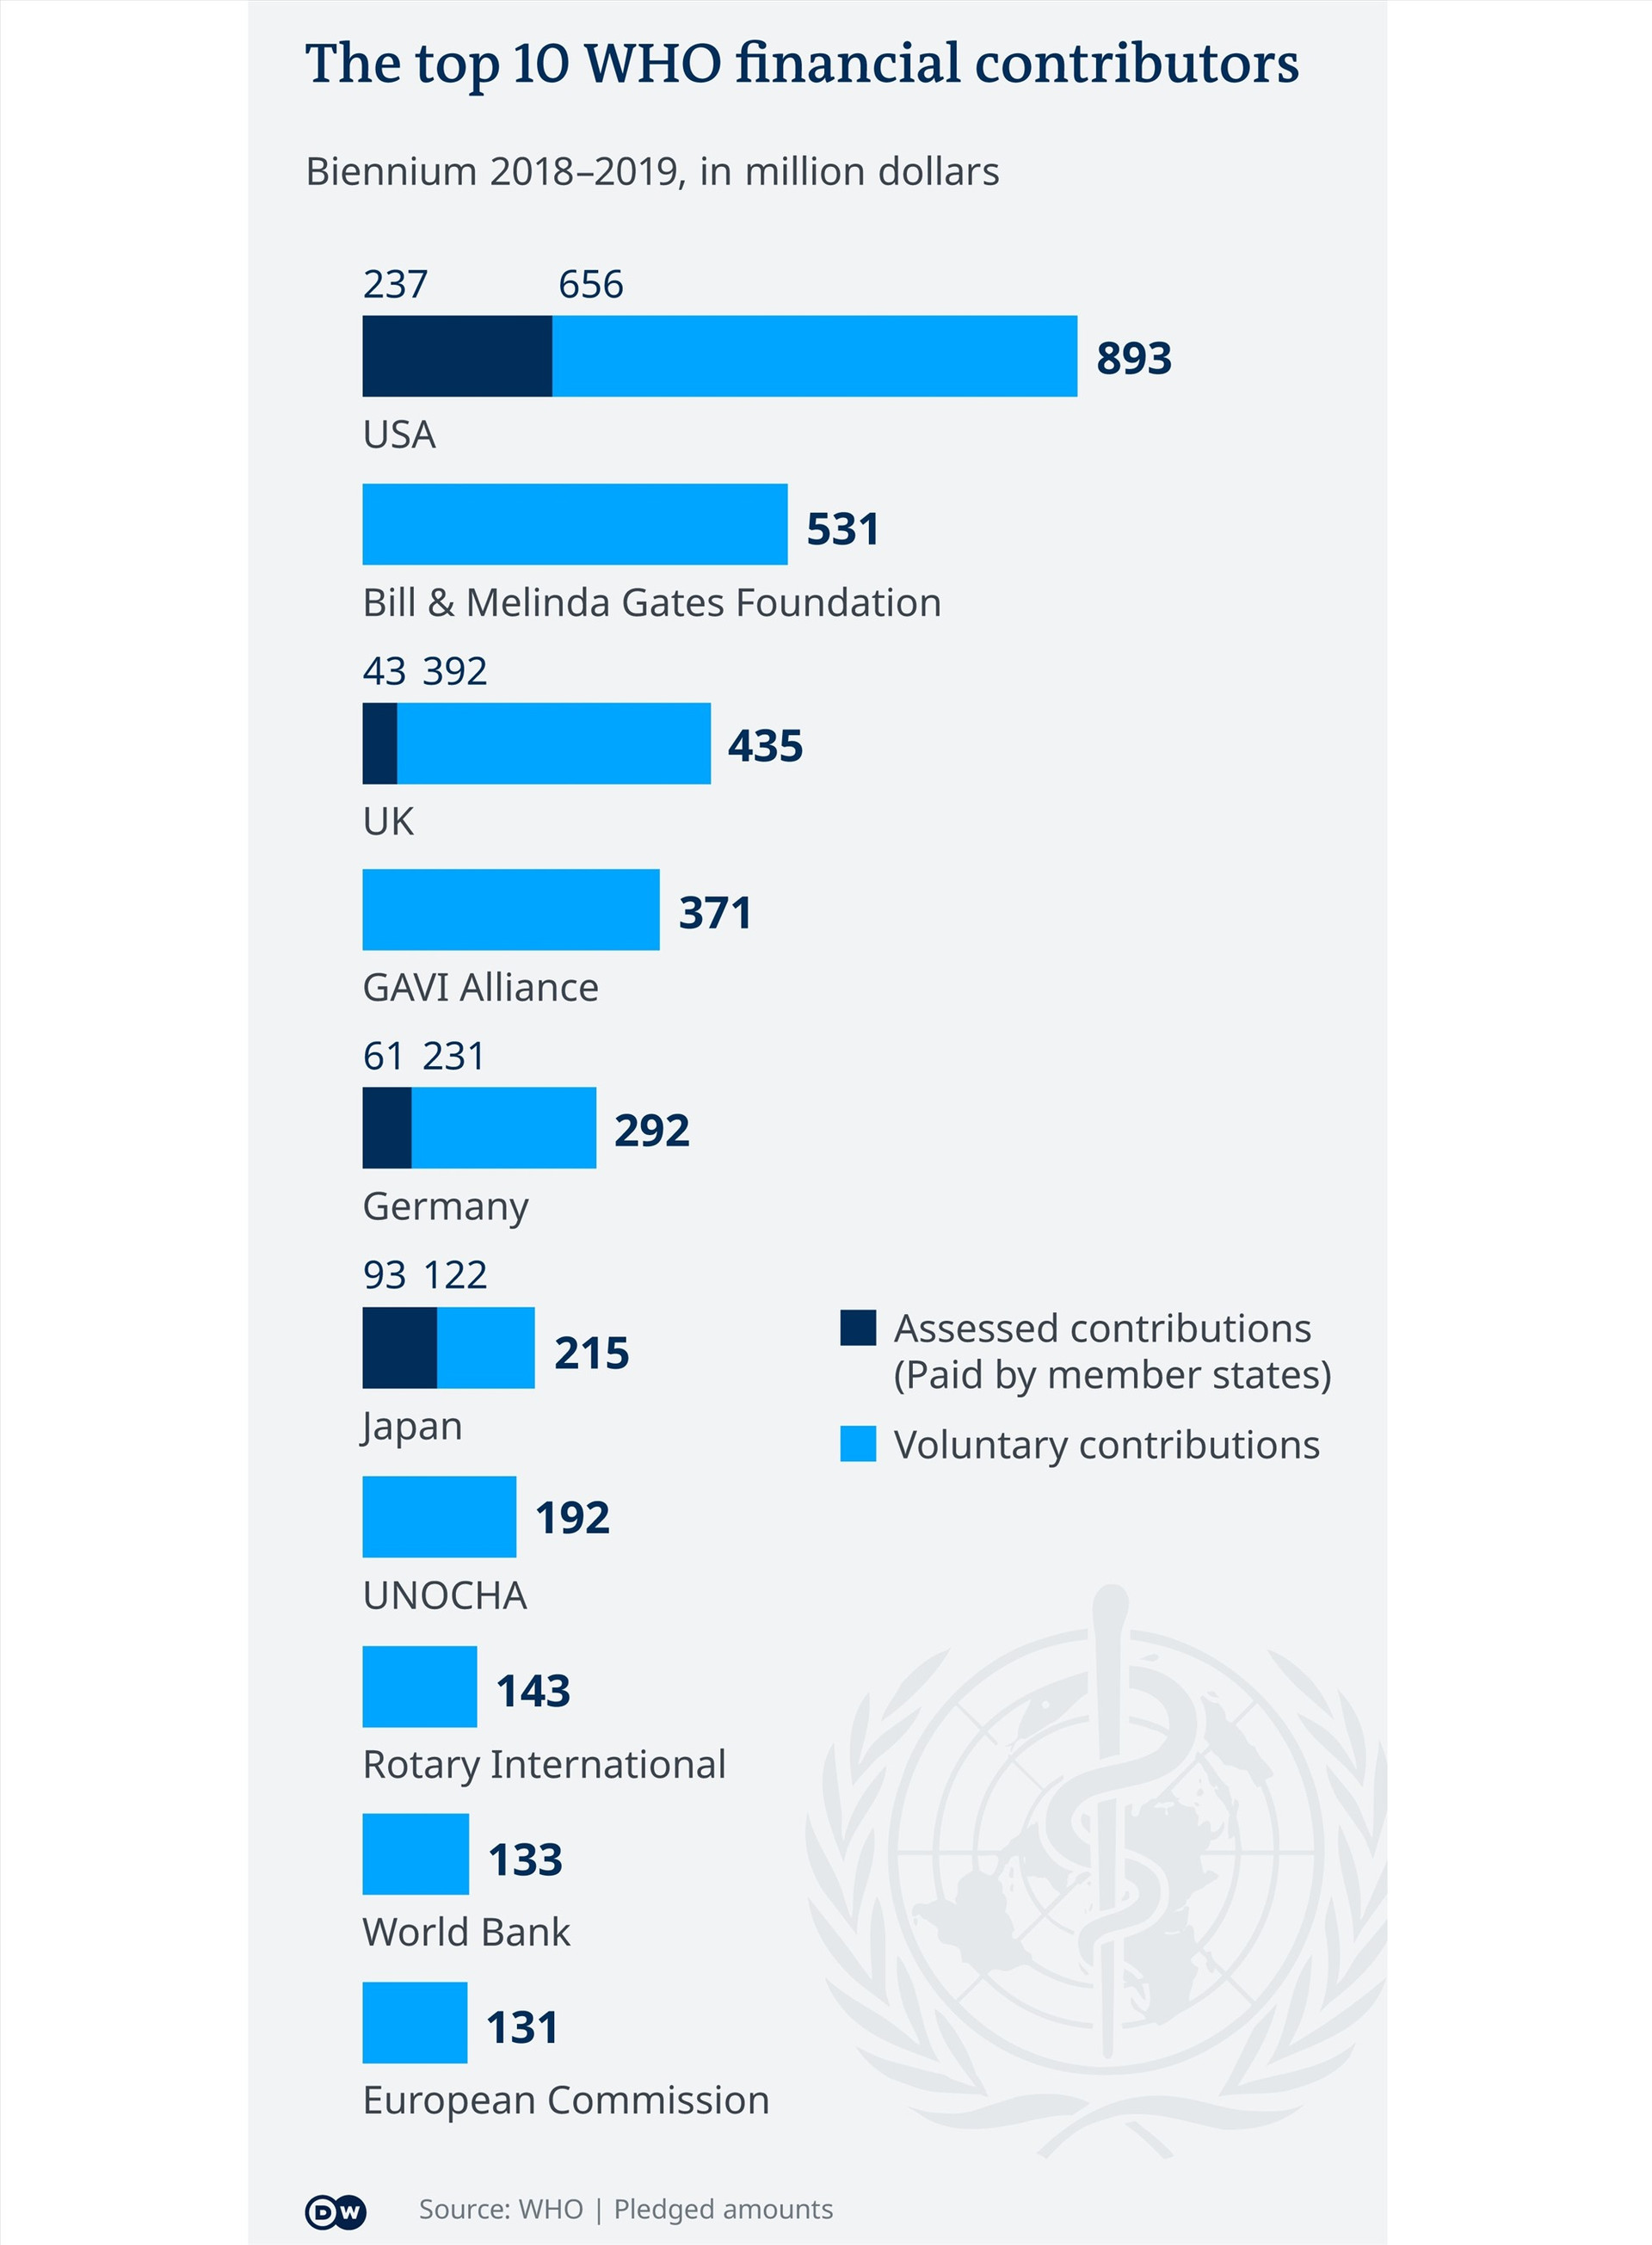 Danh sách những nhà đóng góp tài chính nhiều nhất cho WHO trong giai đoạn 2018-2019. Ảnh: DW